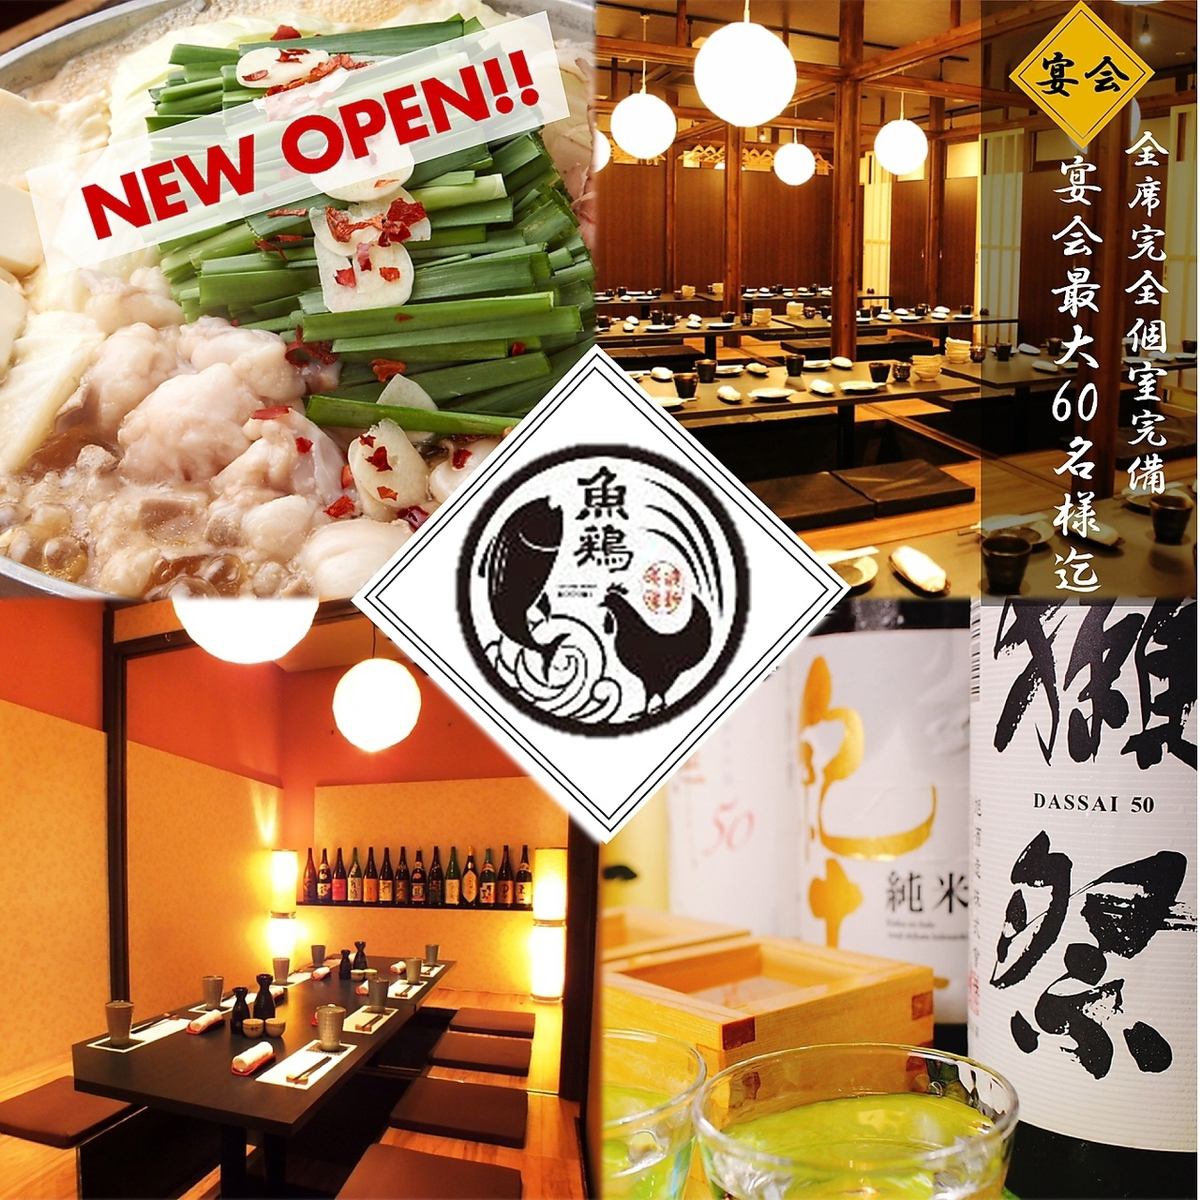 ◆ 3 시간 음료 무제한 코스 준비! 일본 술과 해물이 매력적인 닭!